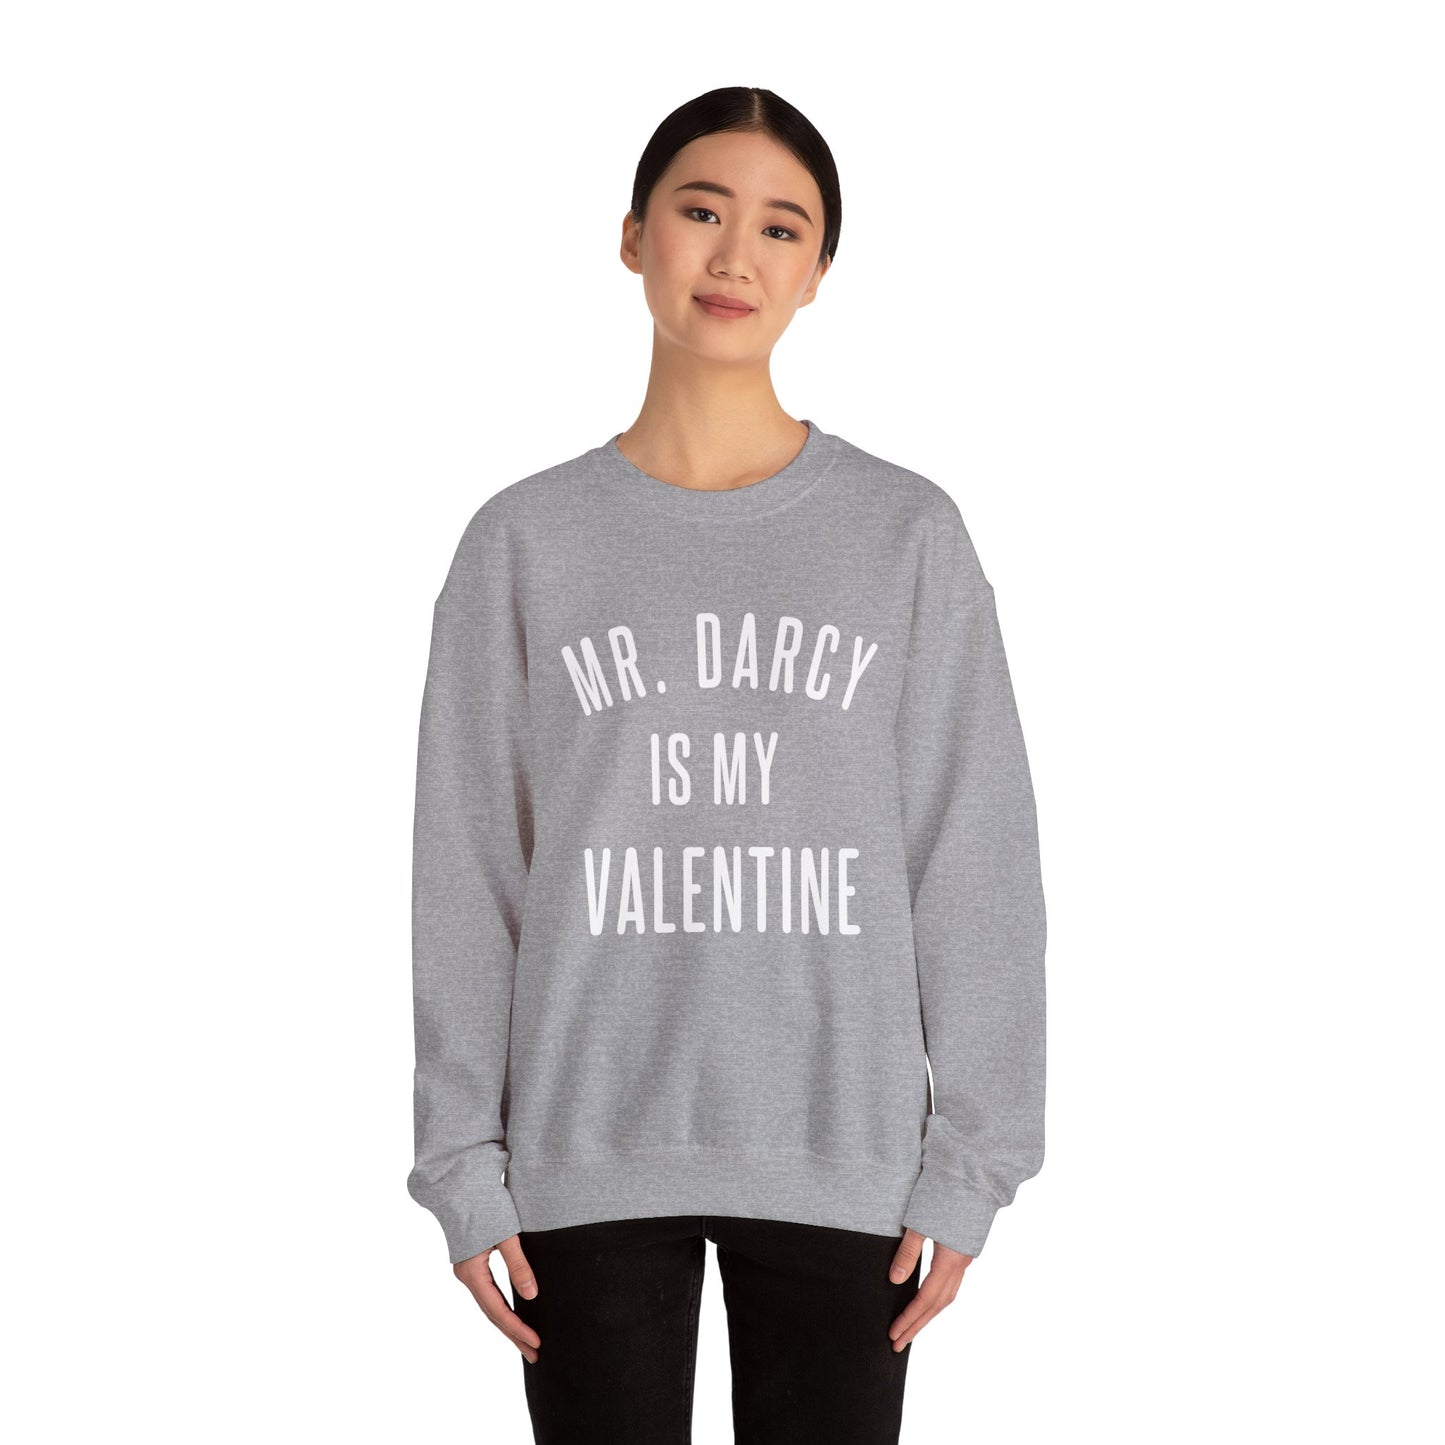 Mr. Darcy is my Valentine Crewneck Sweatshirt